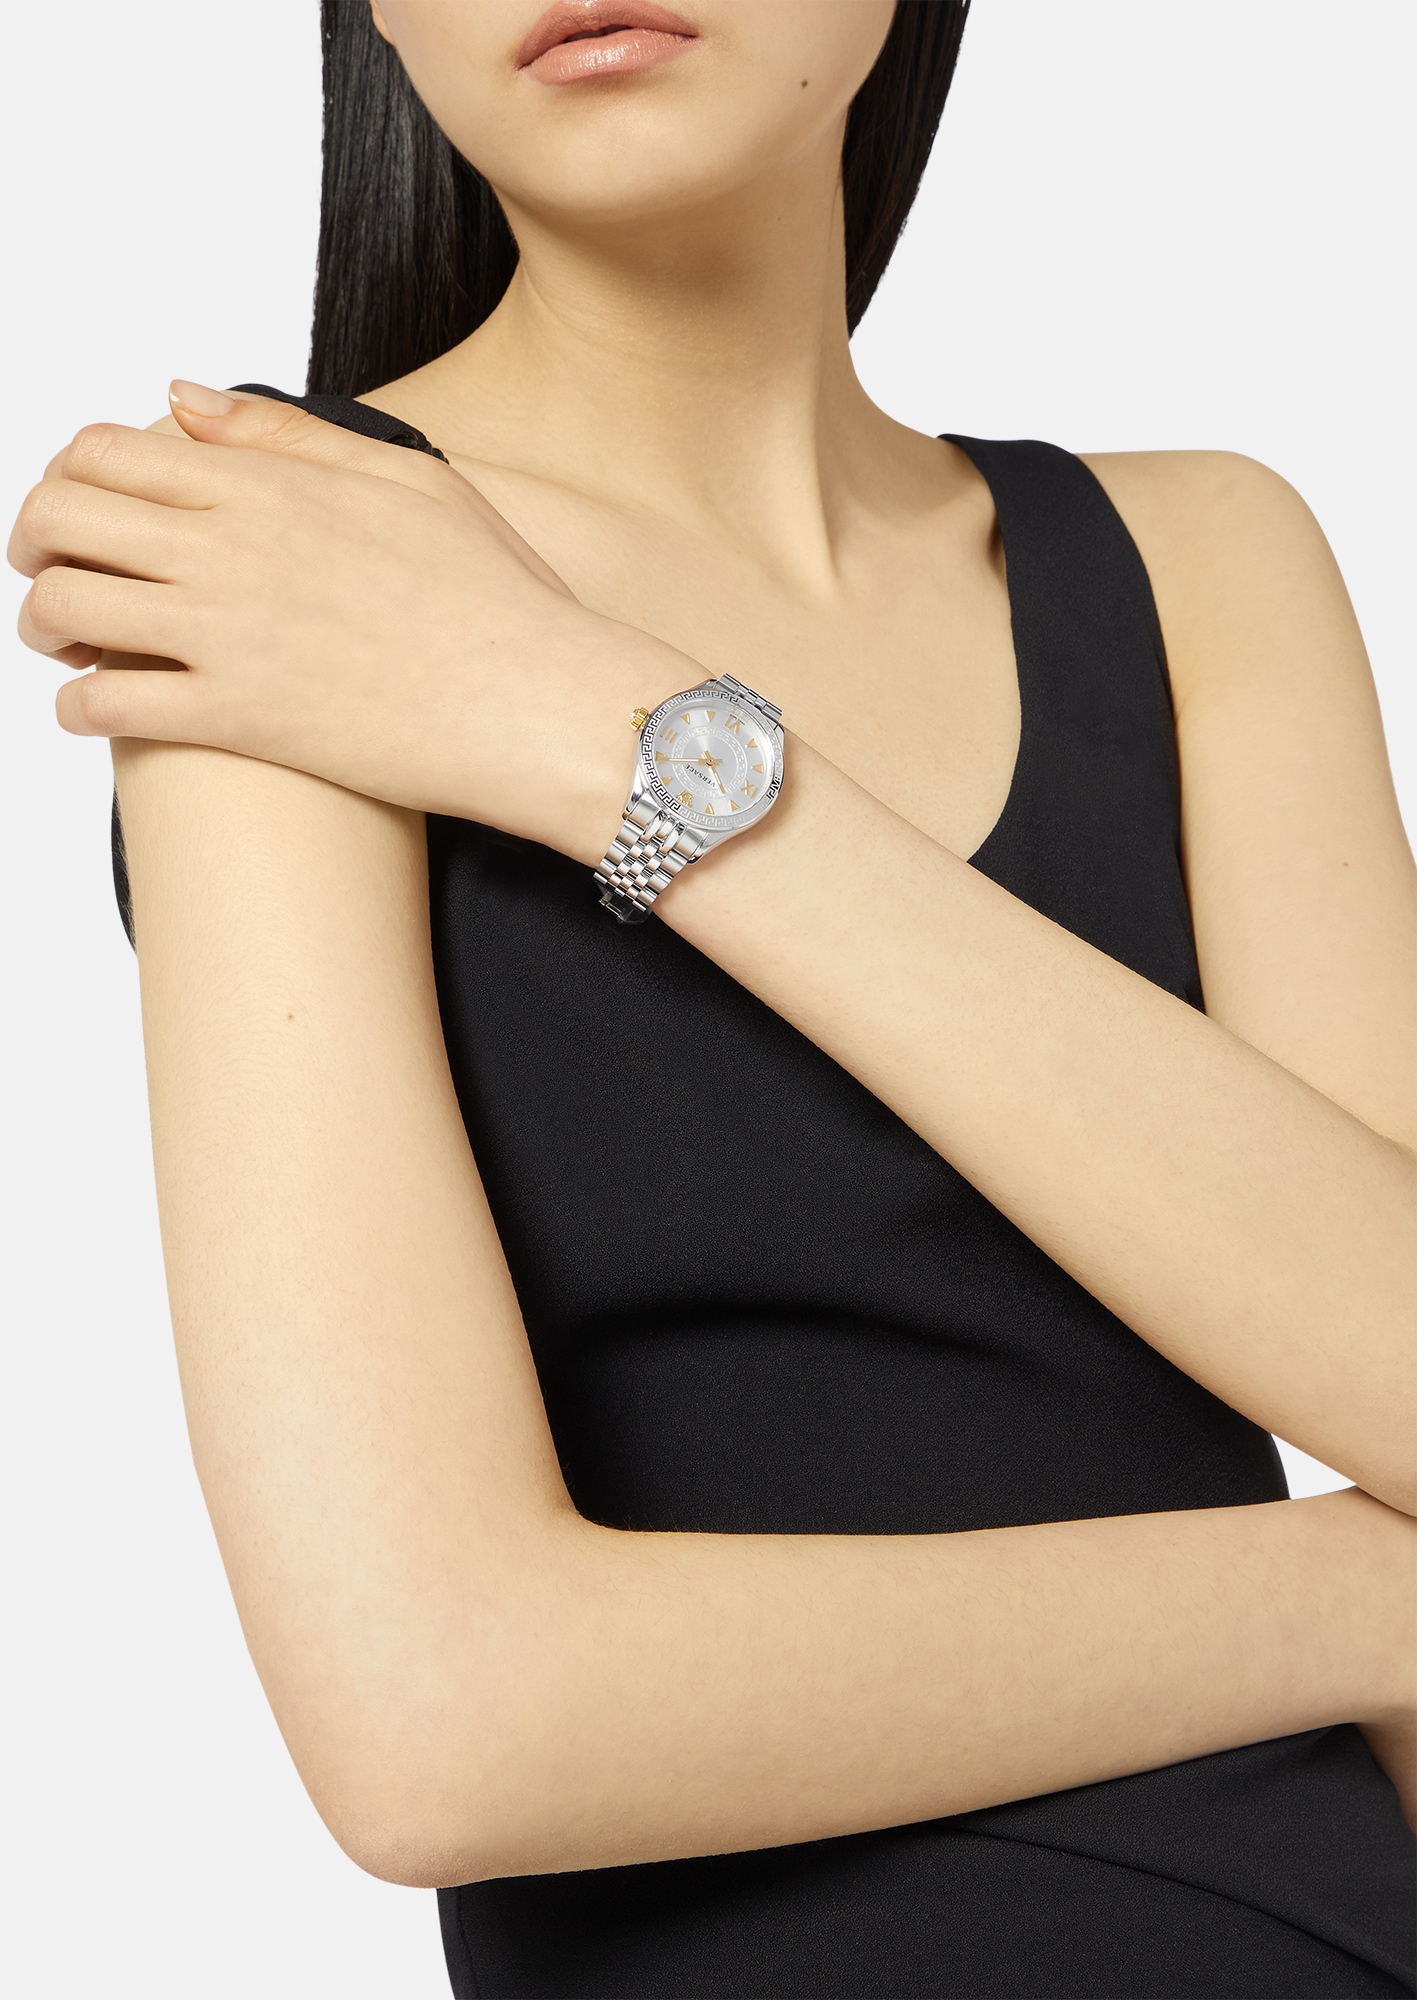 Versace Schweizer Uhr »HELLENYIUM LADY, VE2S00322«